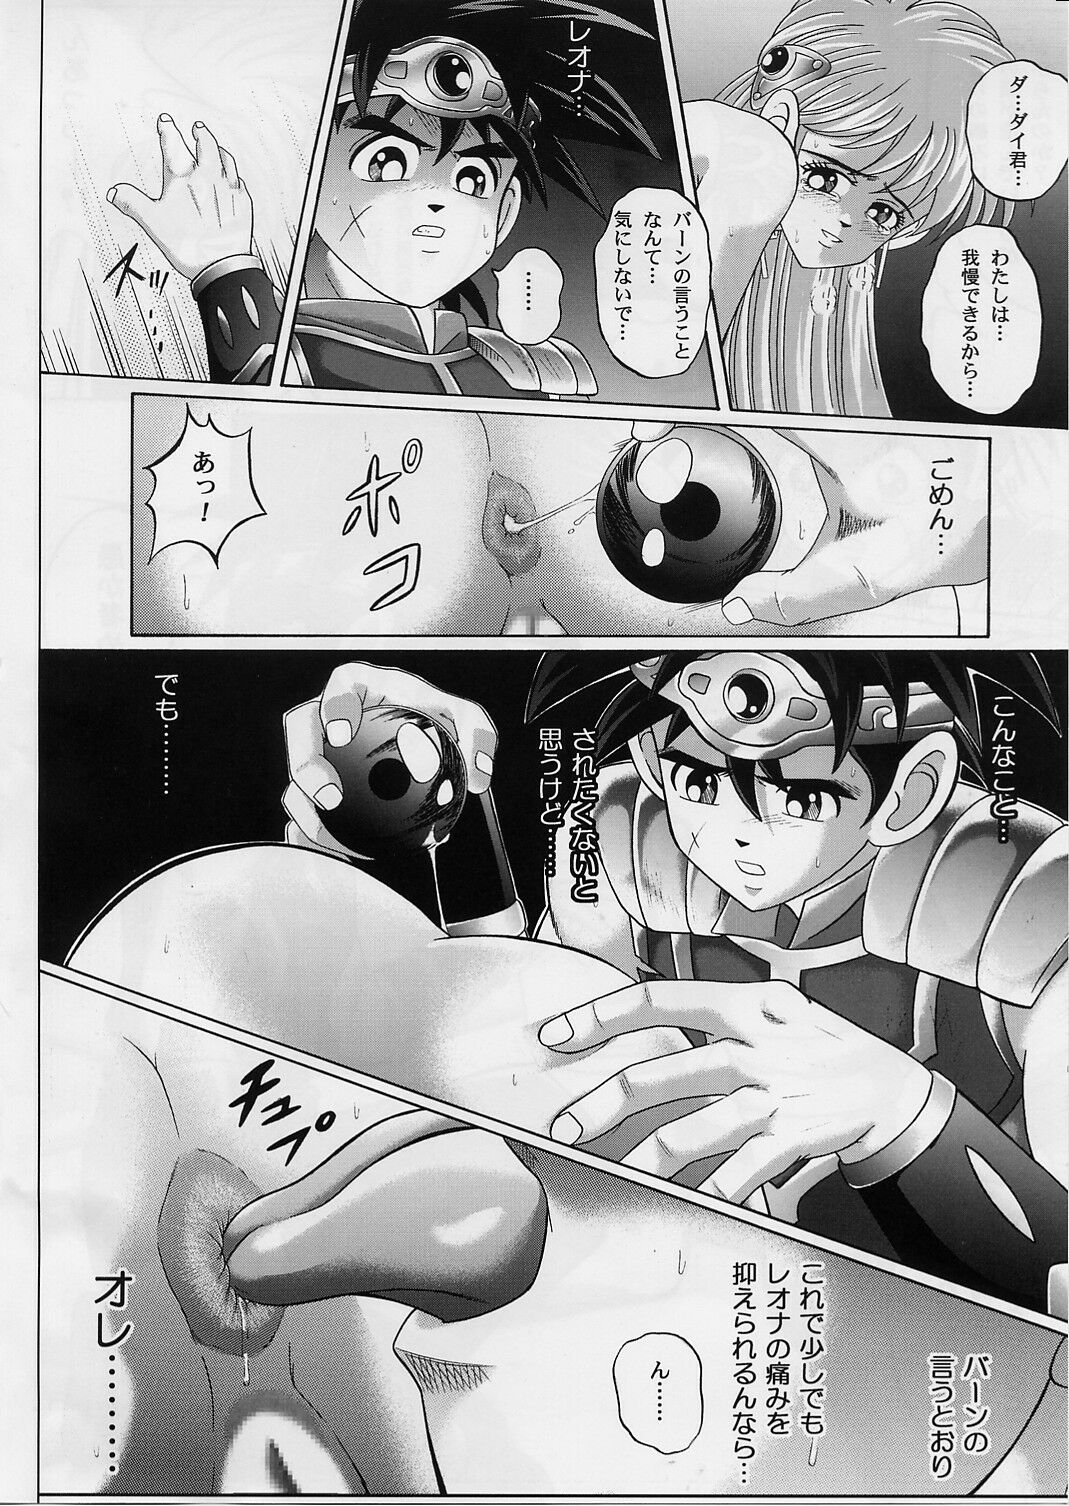 [Cyclone (Izumi, Reizei)] DIME ALLIANCE 2 (Dragon Quest Dai no Daibouken) page 15 full